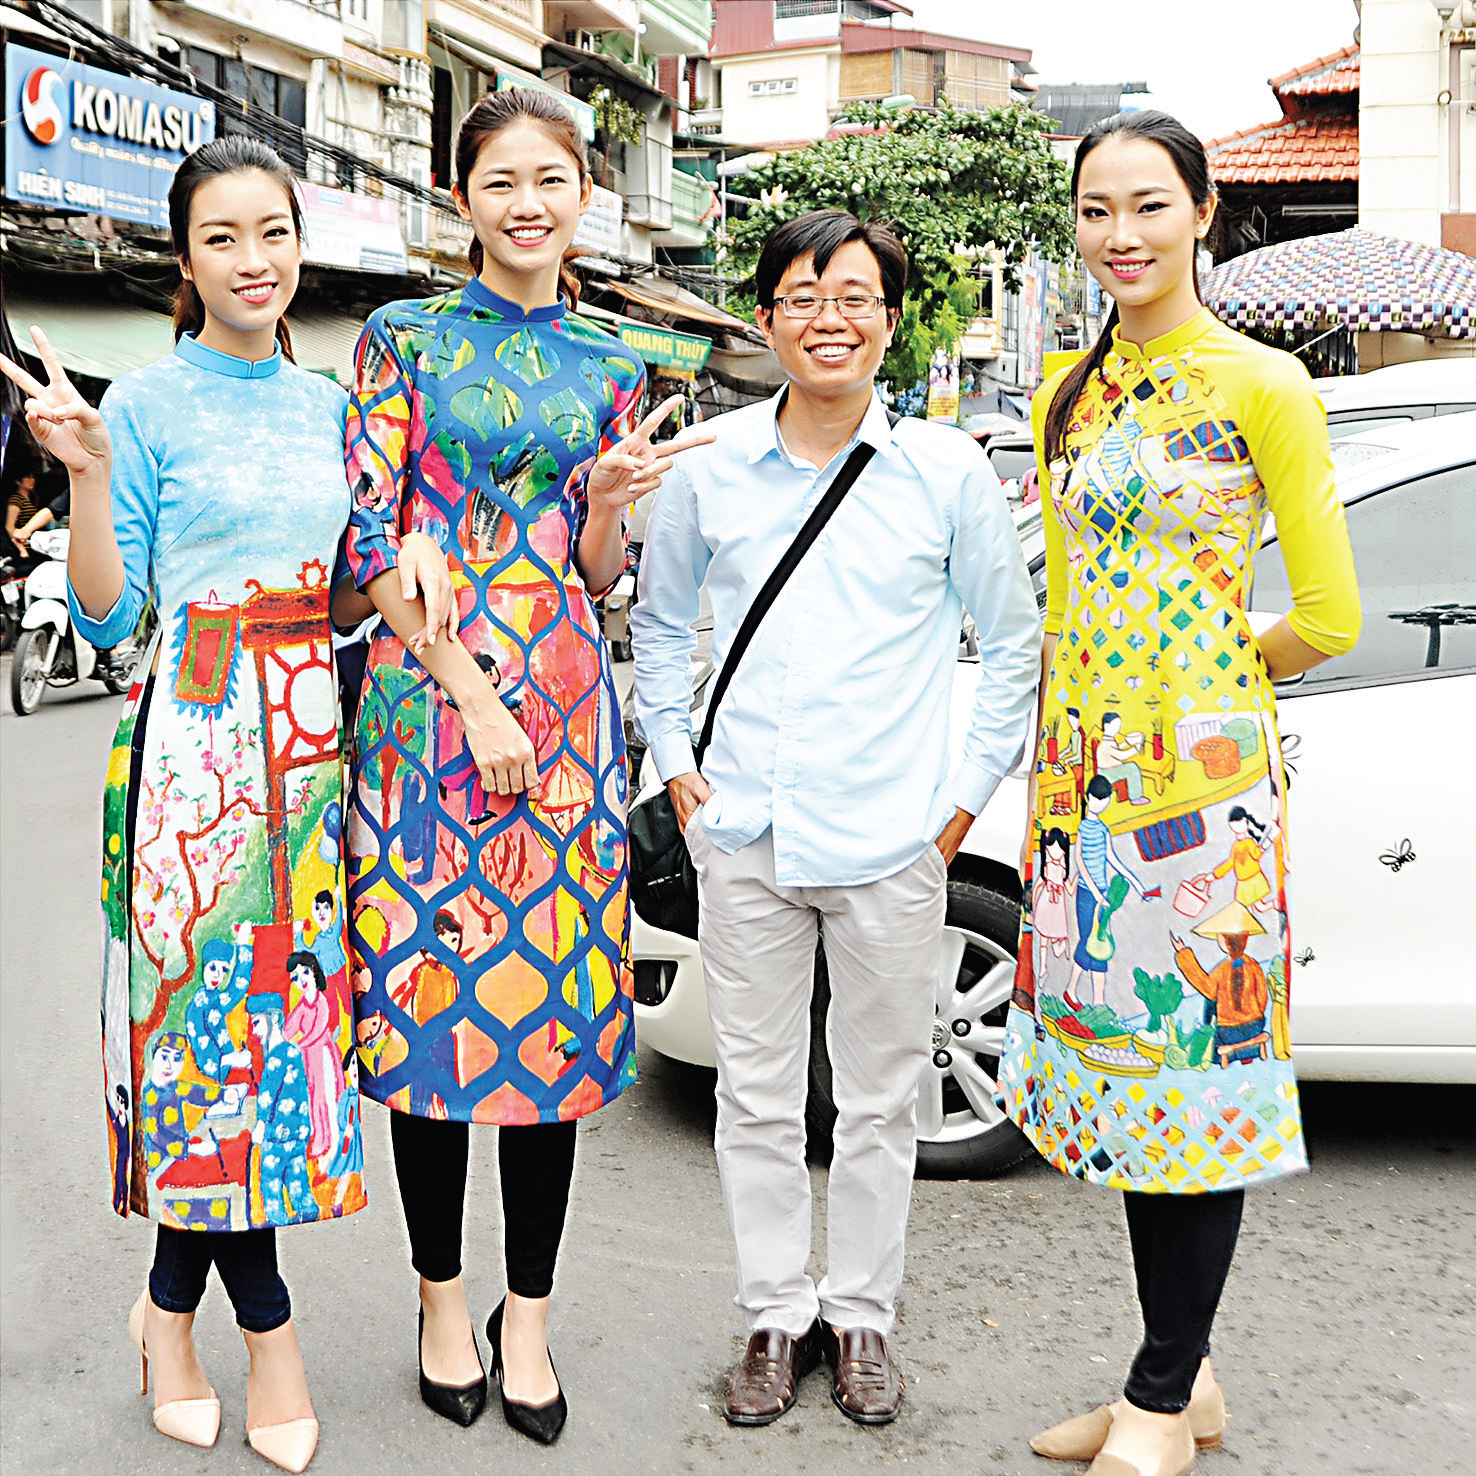 Phóng viên ảnh
báo TNTP&NĐ
lọt thỏm giữa
những hoa hậu
Việt Nam.